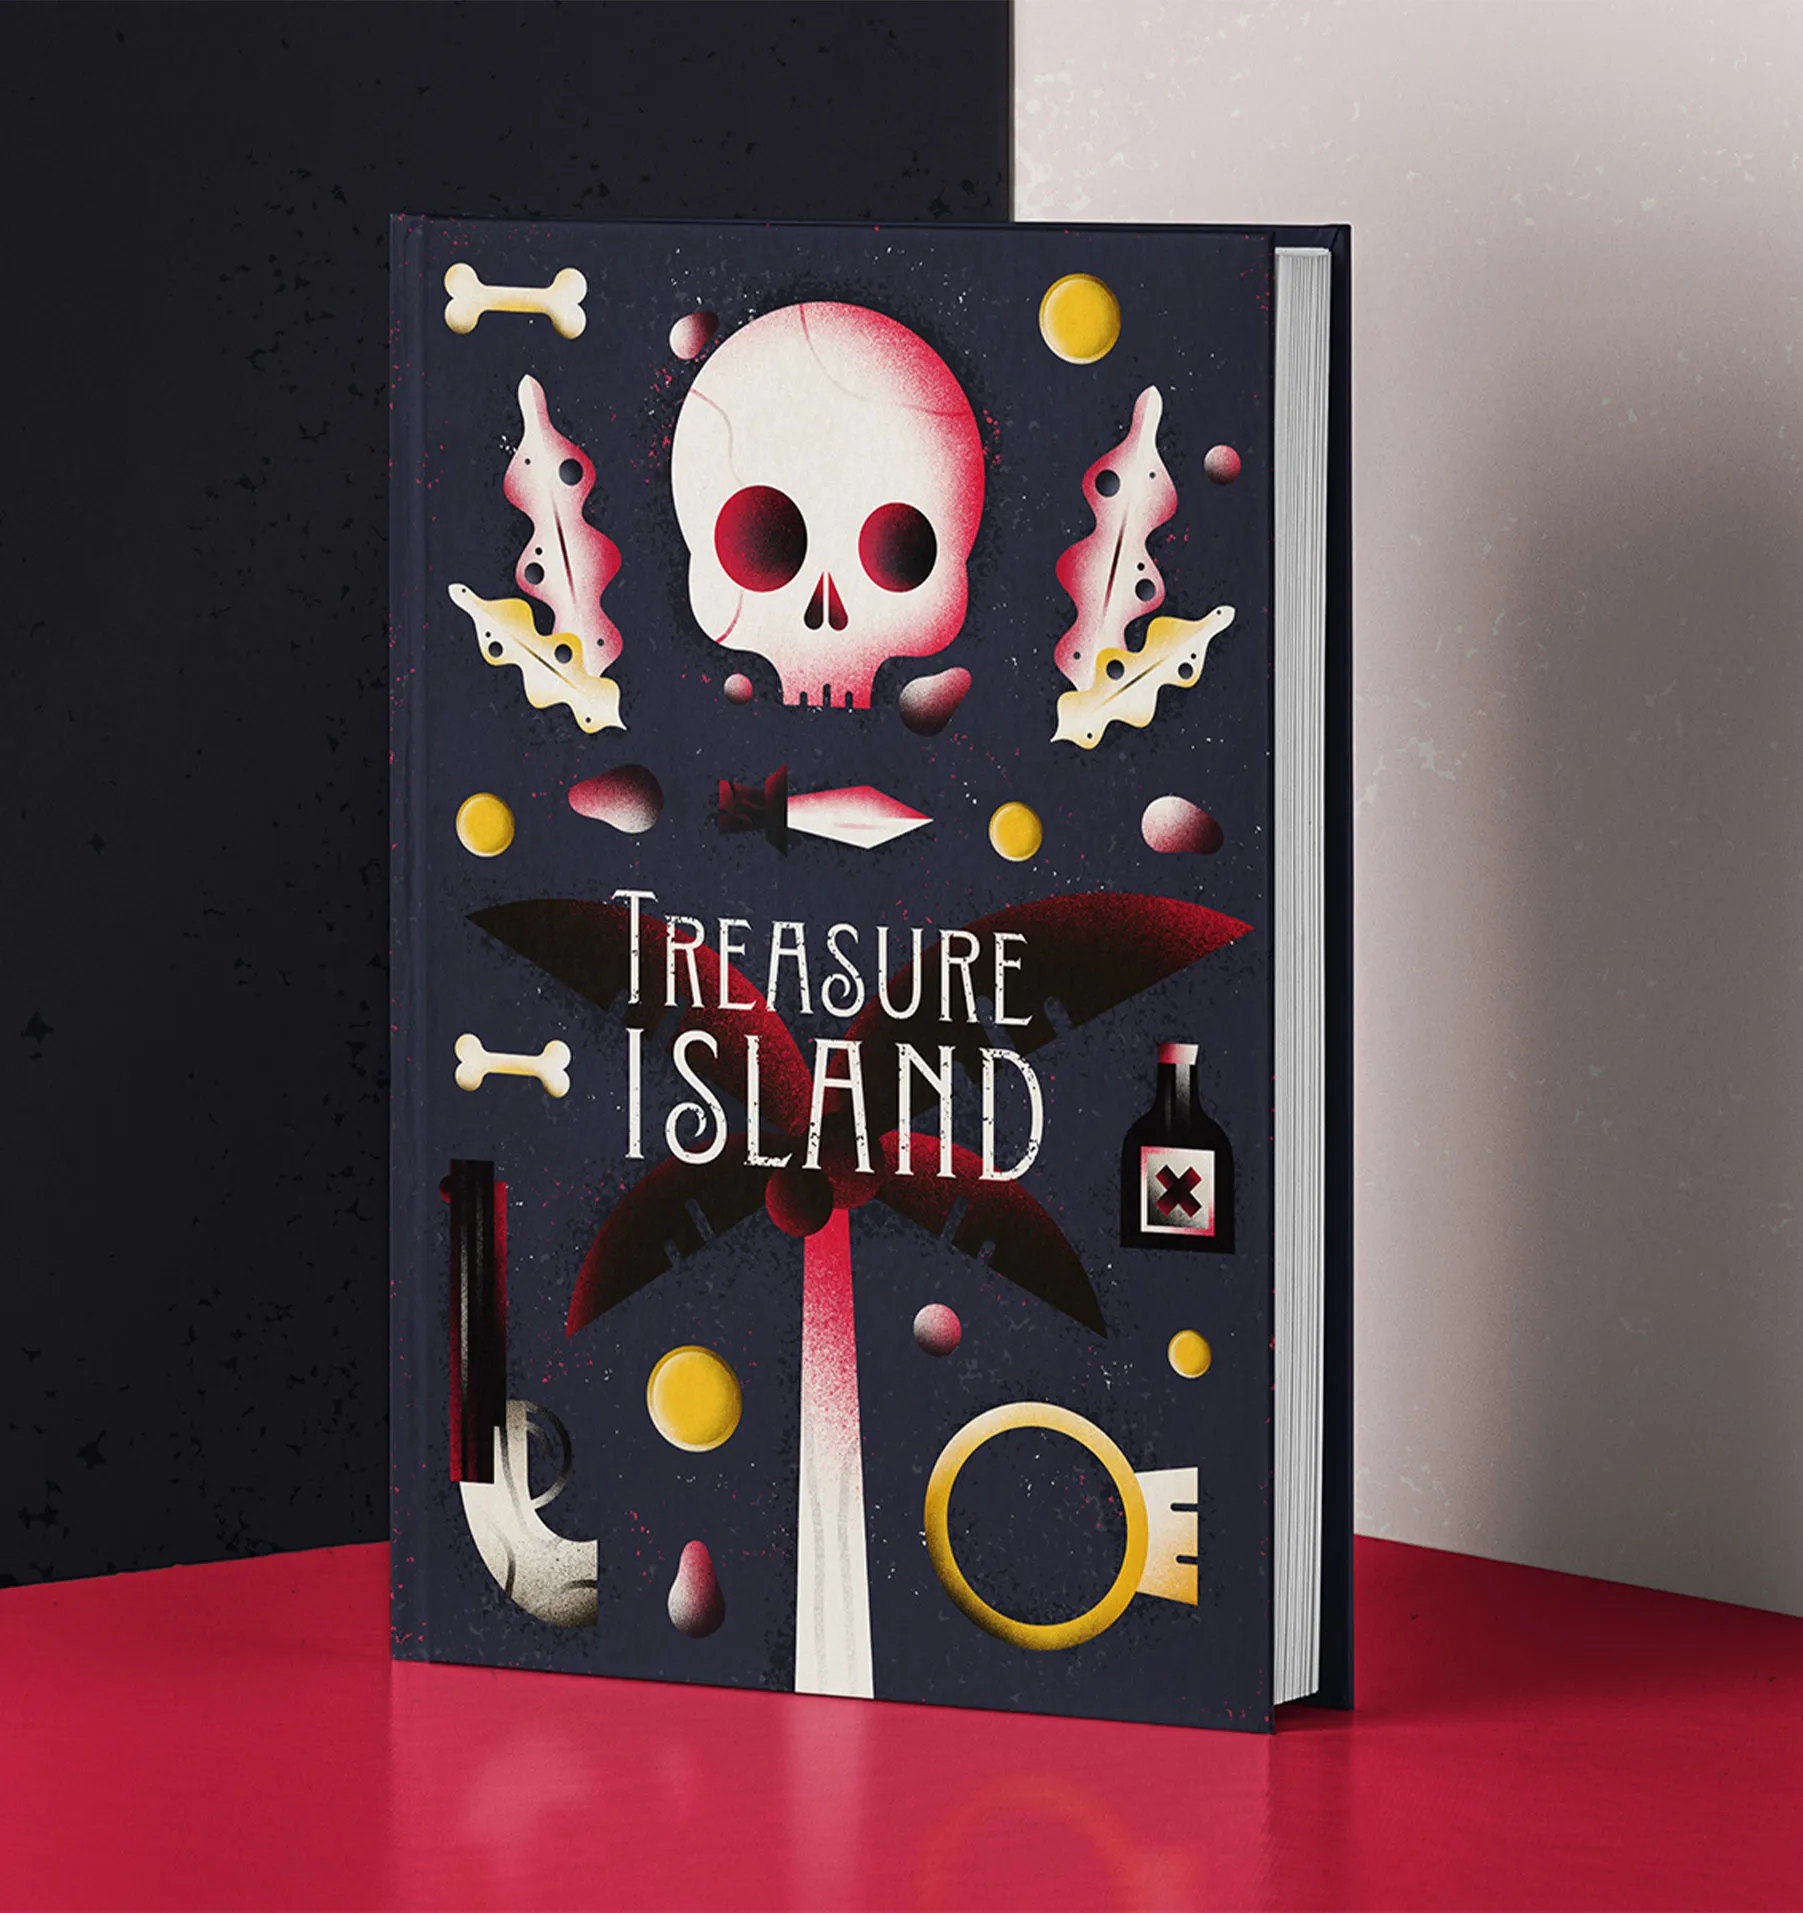 Ein Buch mit einer Coverillustration für eine Piratengeschichte